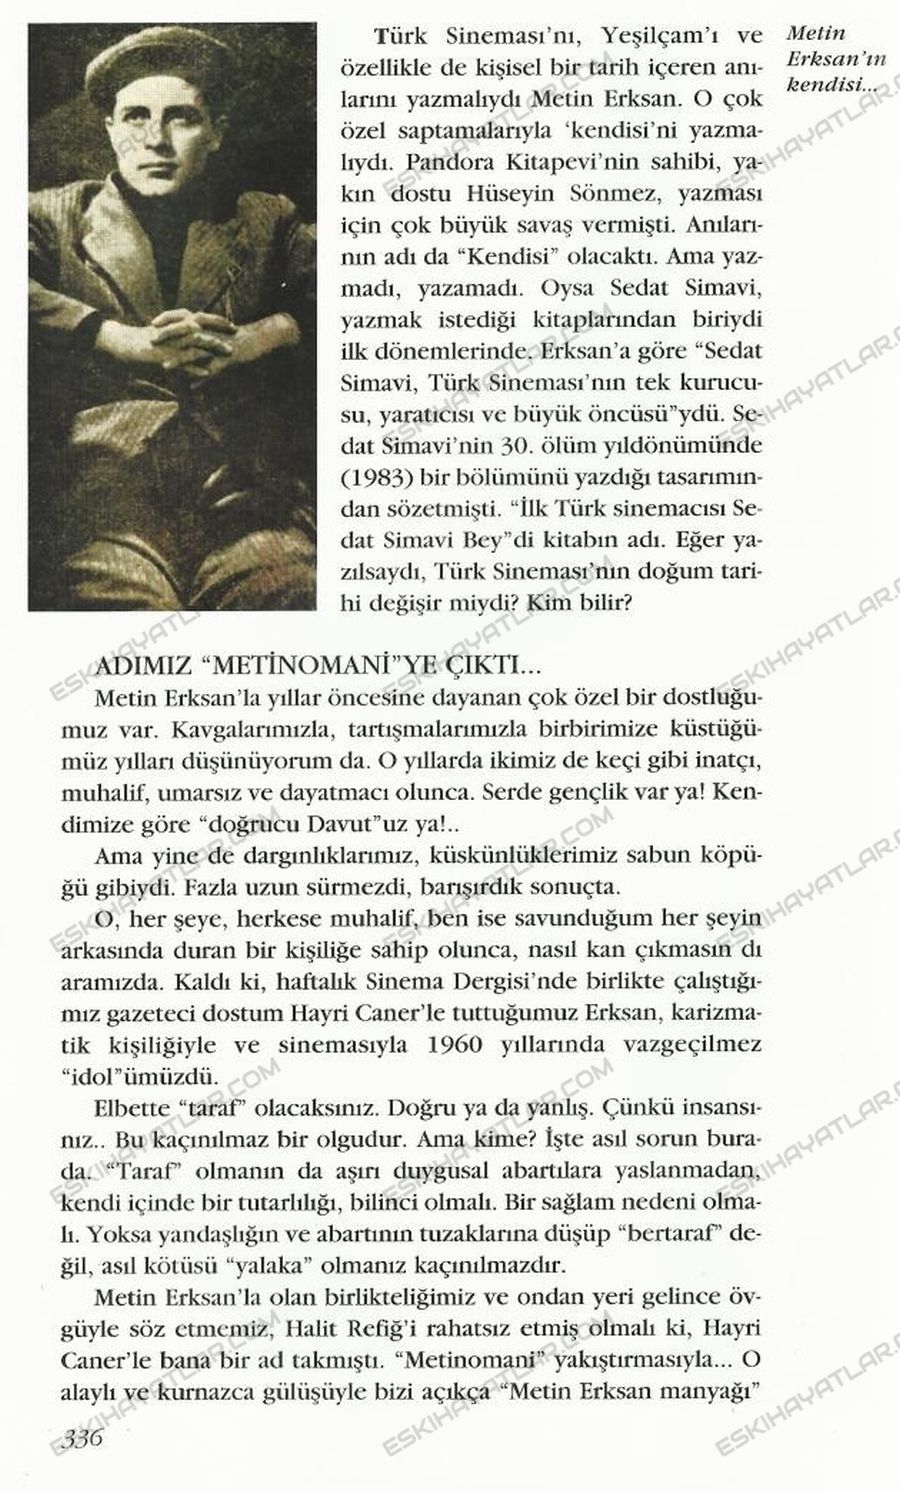 0137-metin-erksan-filmleri-altmisli-yillarda-sinema-filmlerinde-sansur-turk-sinemasinin-marjinalleri-ve-orijinalleri-agah-ozguc (1)